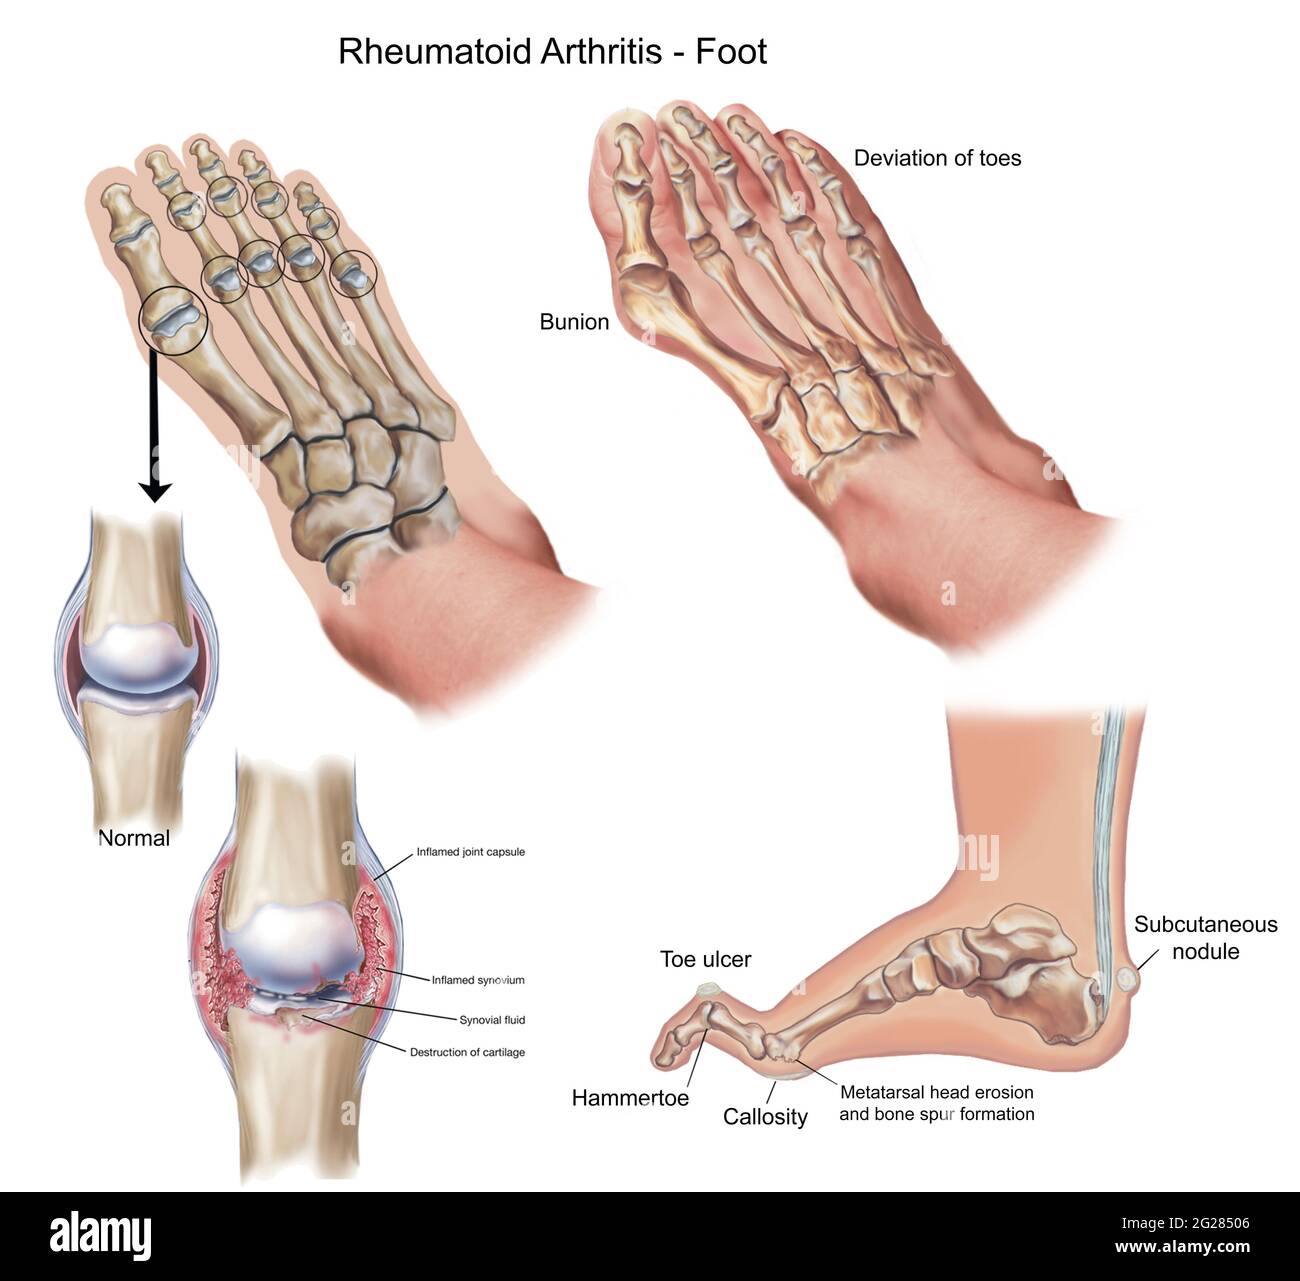 Vista superior y lateral del pie que muestra deformidades causadas por la artritis reumatoide. Foto de stock